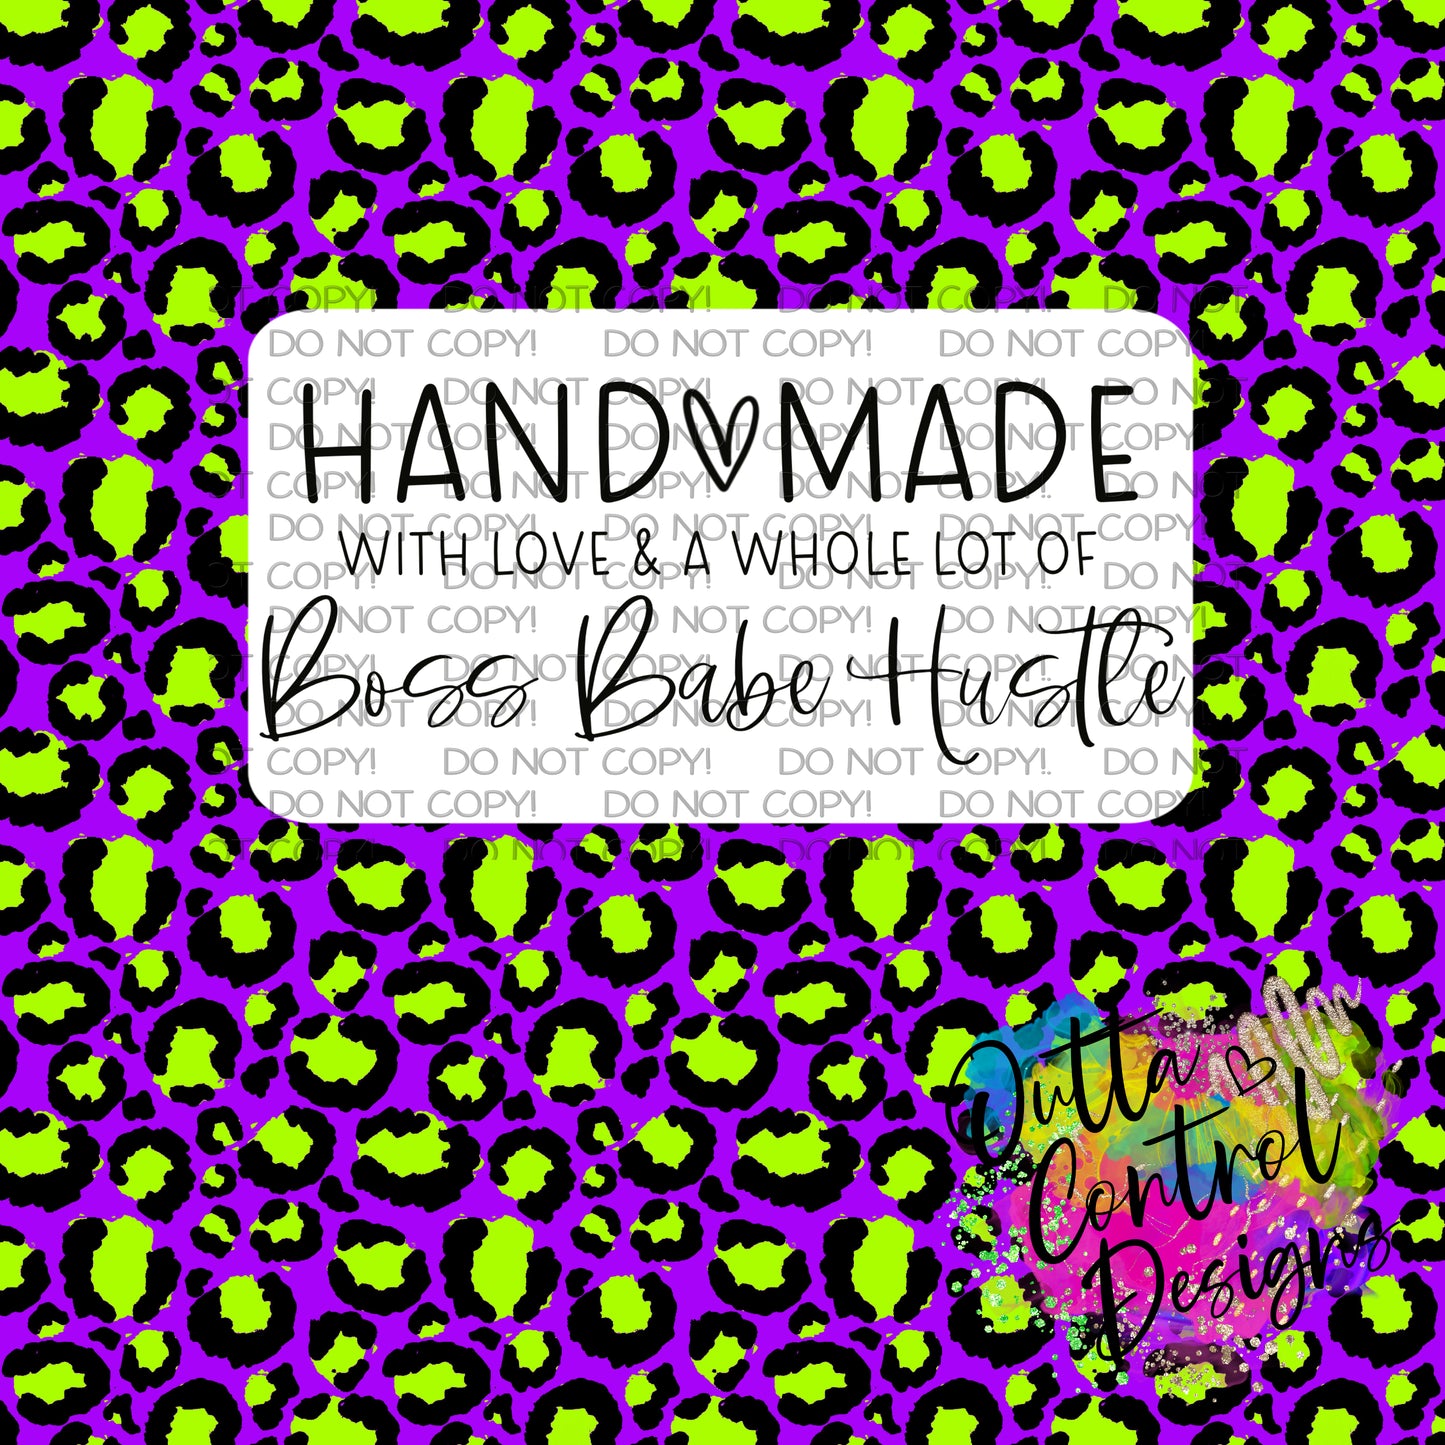 Handmade Boss Babe Hustle Thermal Sticker (25 per order)